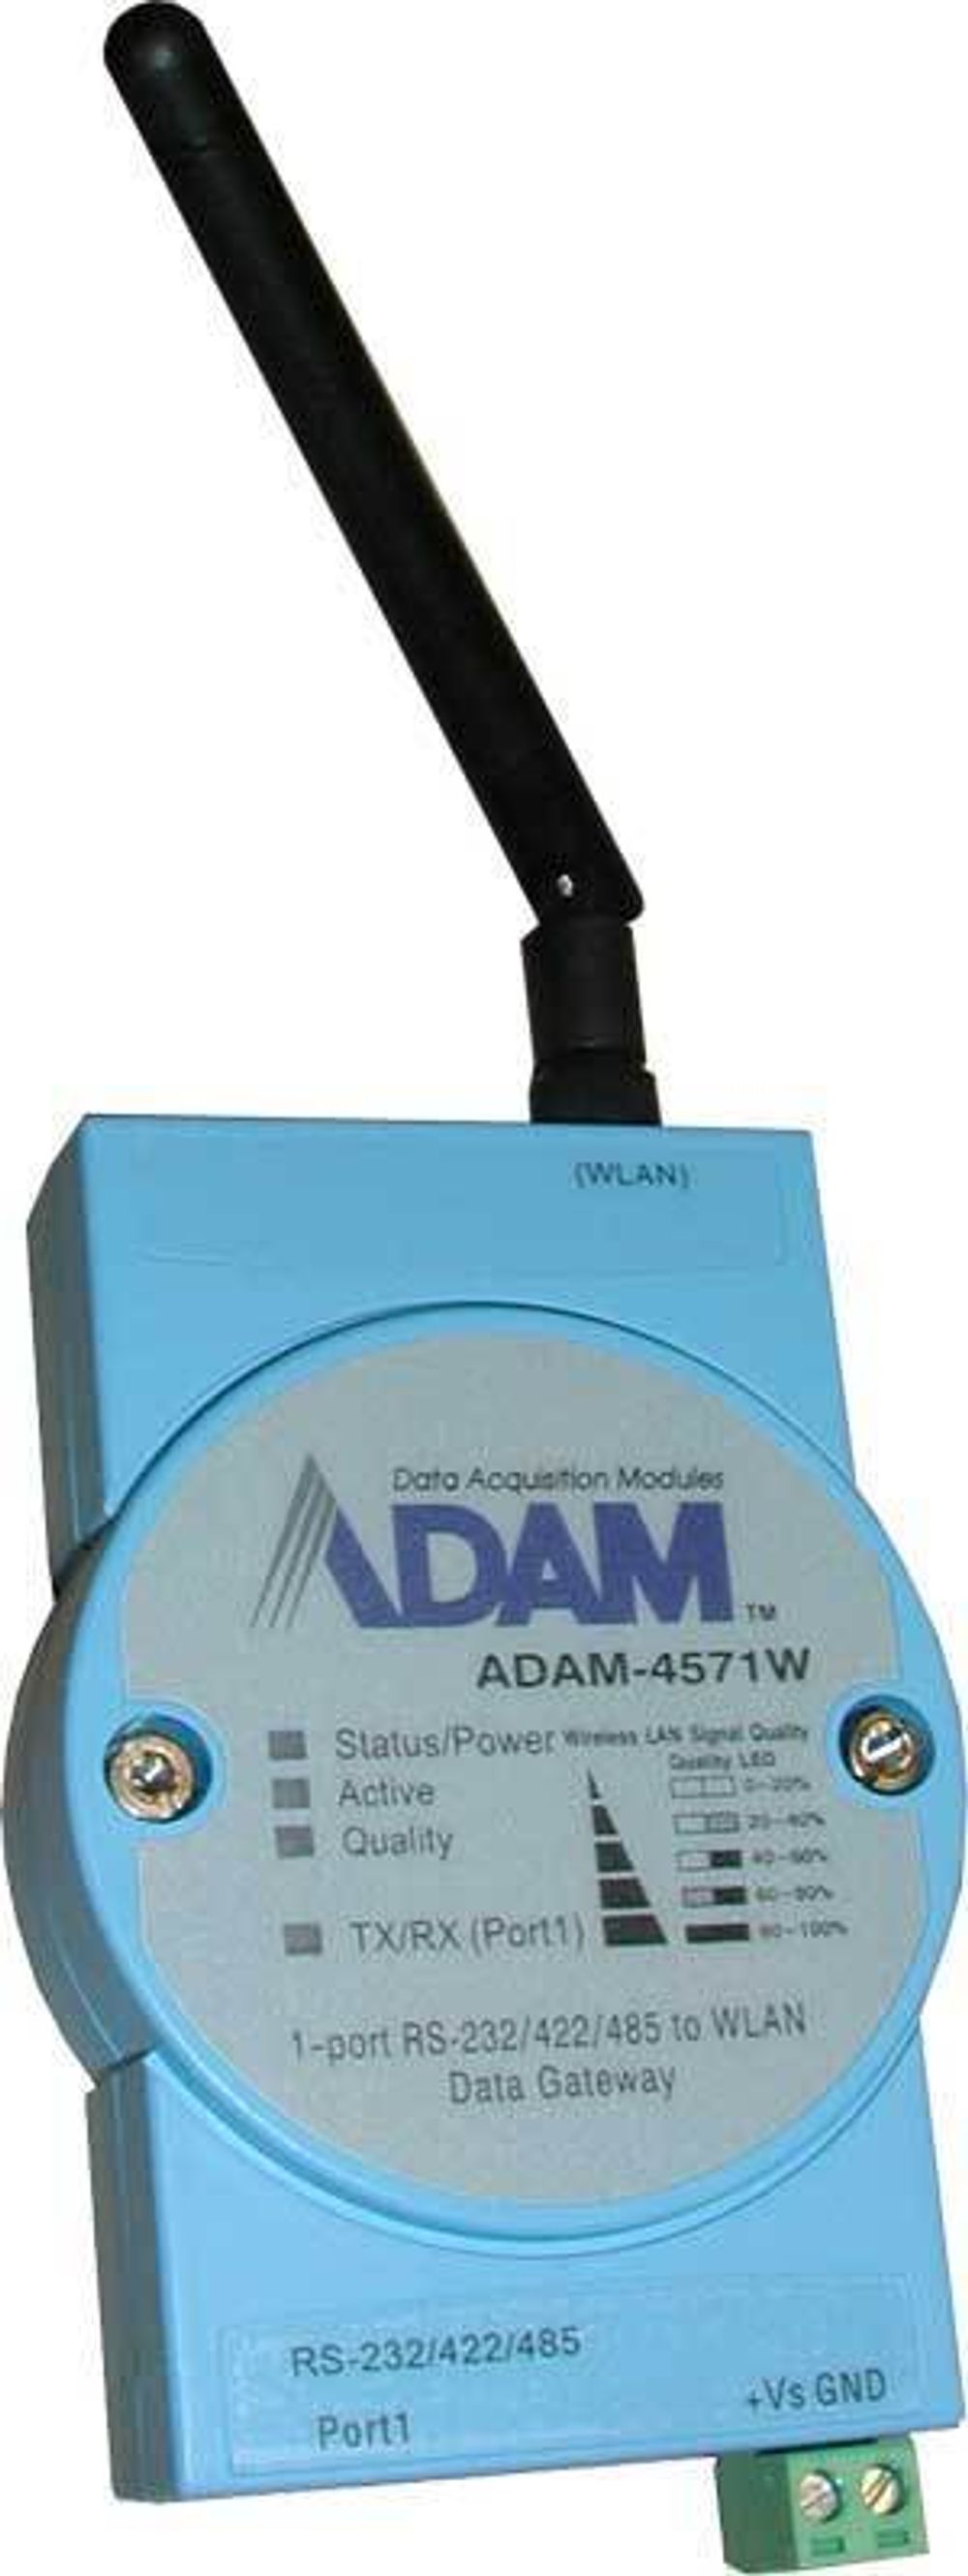 KGS systemer lanserer en ny com-portserver med WLAN tilkobling. ADAM-4571W